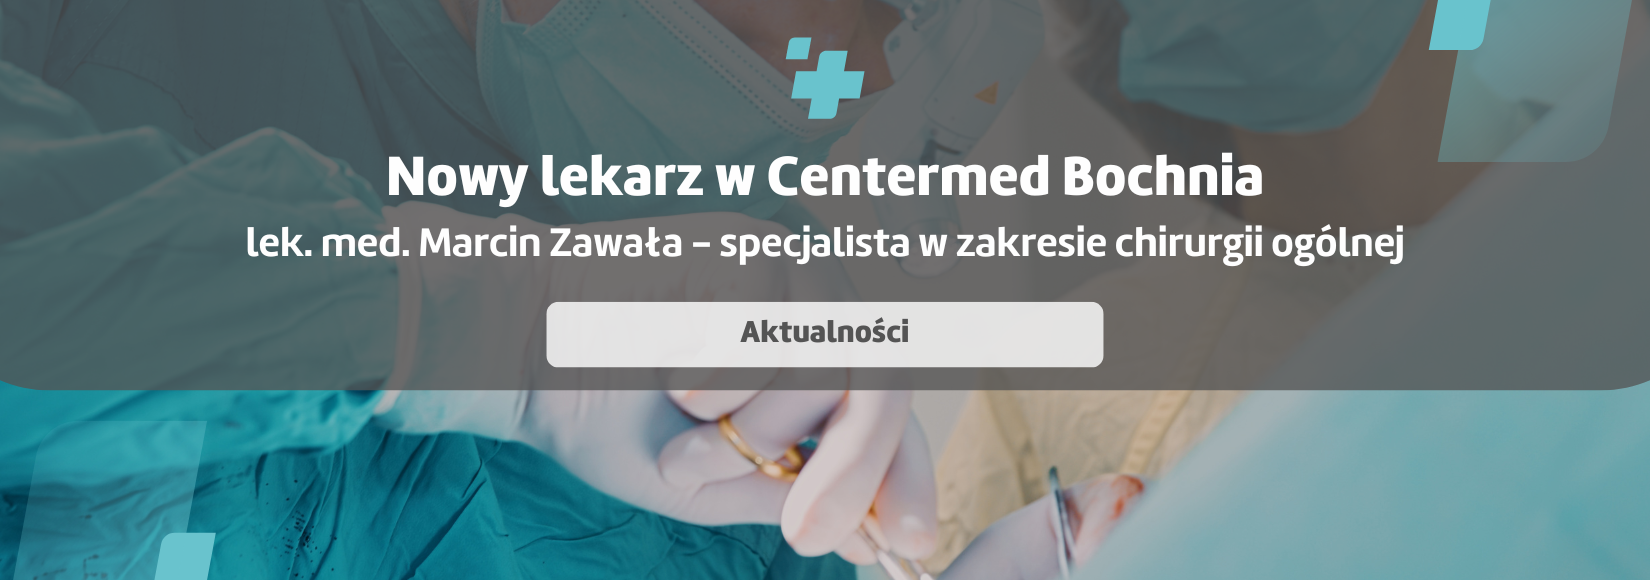 Nowy lekarz w CenterMed Bochnia - lek. med. Marcin Zawała 